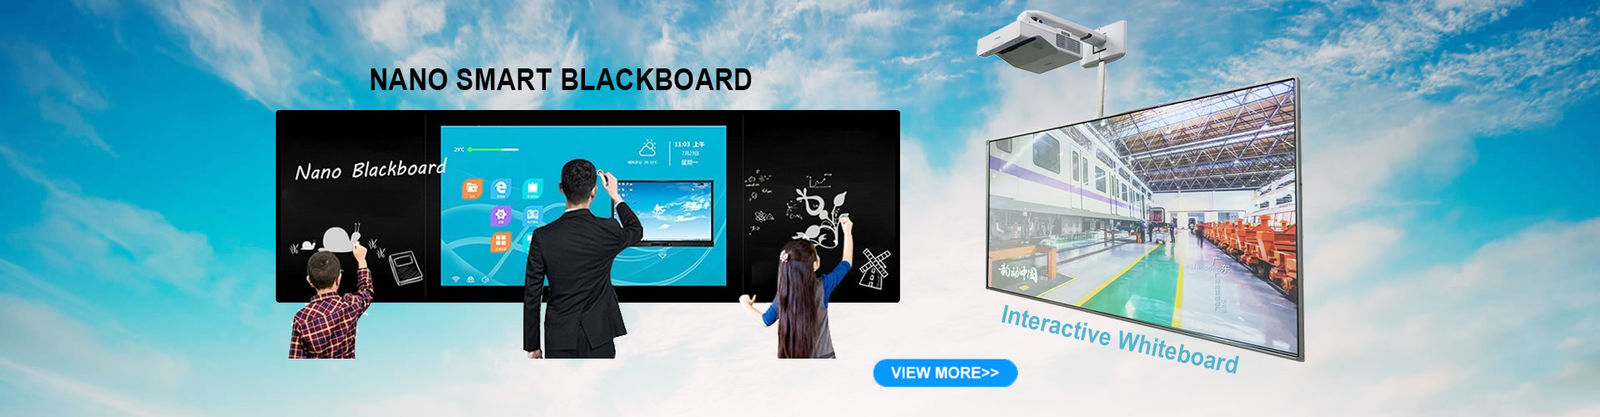 Educação Whiteboard interativo